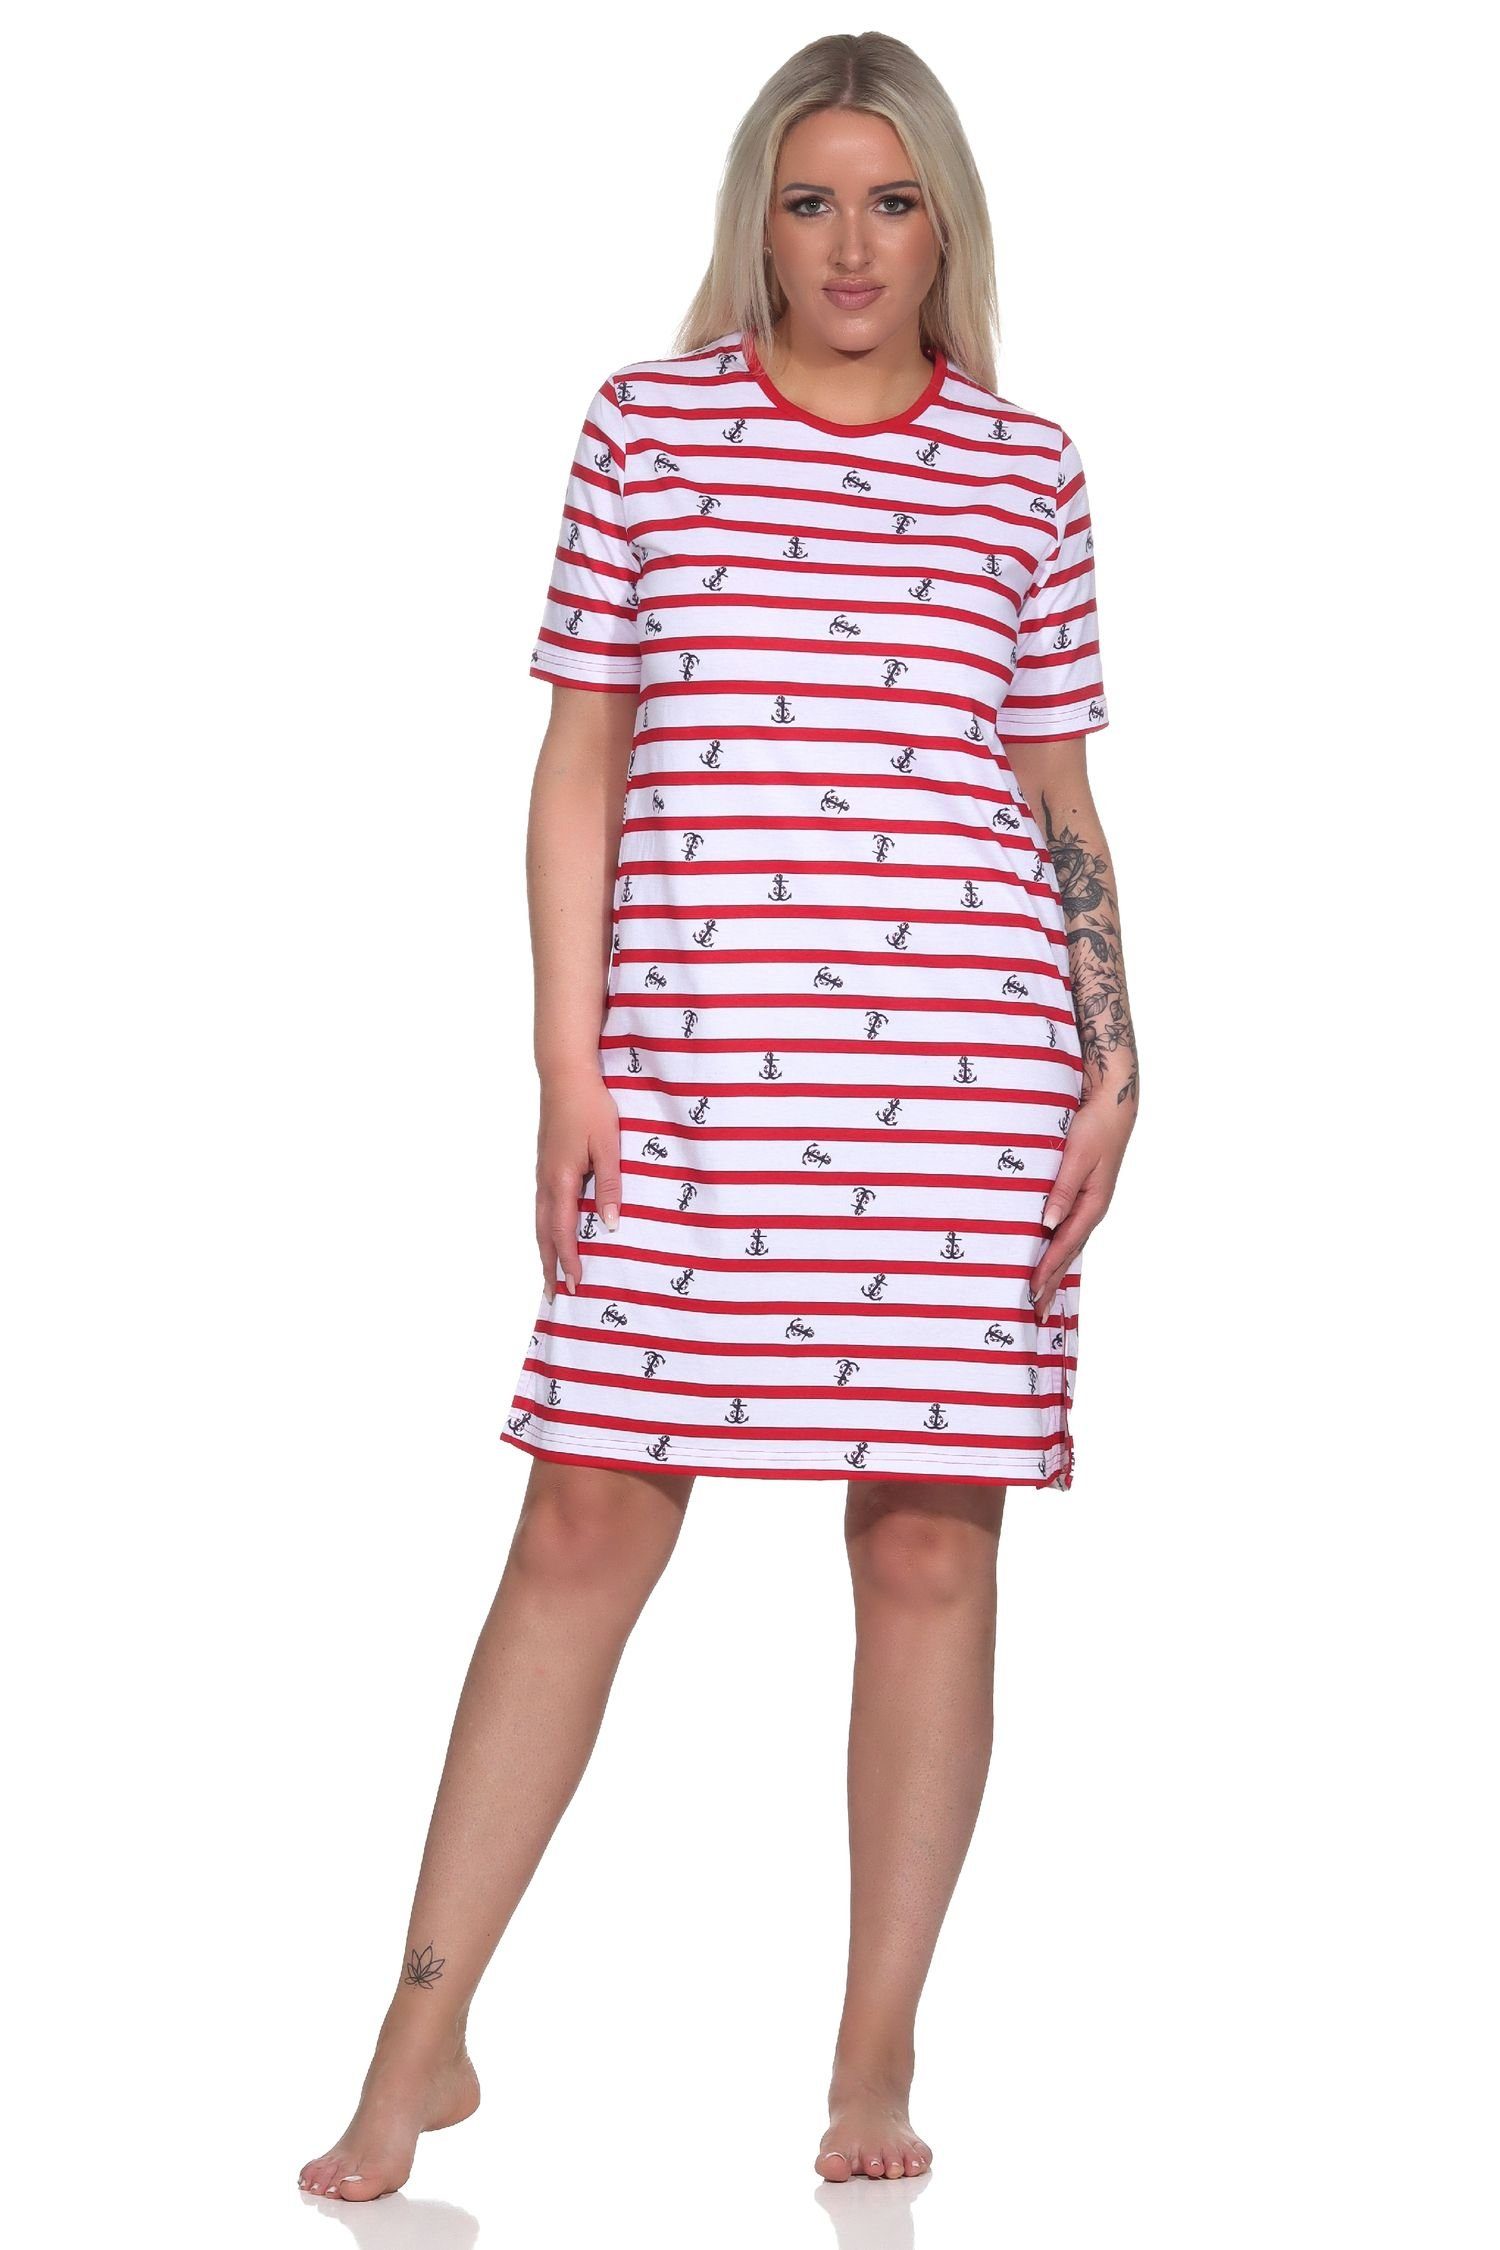 maritimer Nachthemd Damen in Nachthemd Optik - kurzarm auch Übergrössen in Normann rot